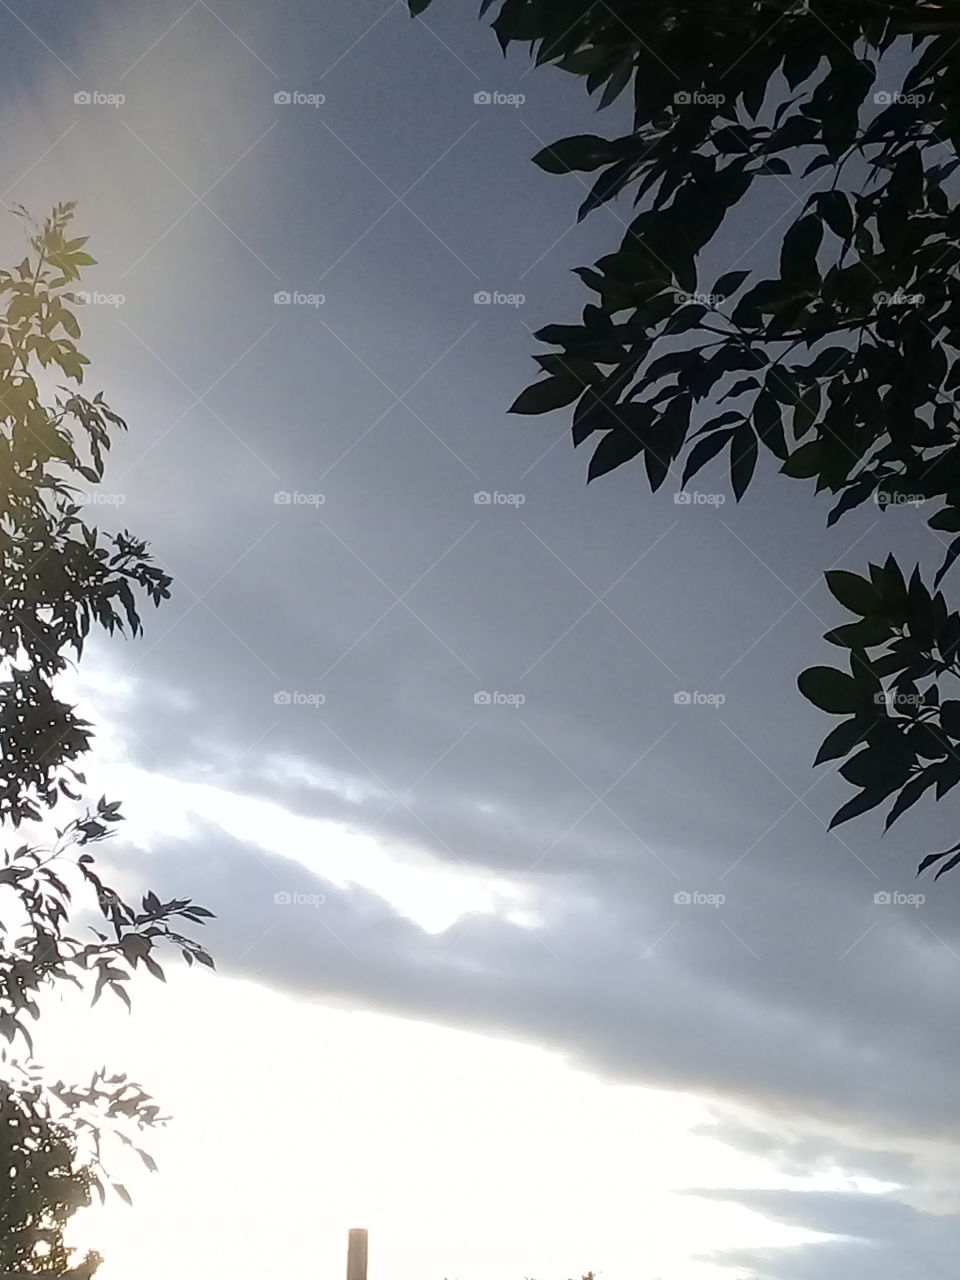 imagen de un cielo nublado de verano presagiando tormenta con varias tonalidades de gris haciendo contraste